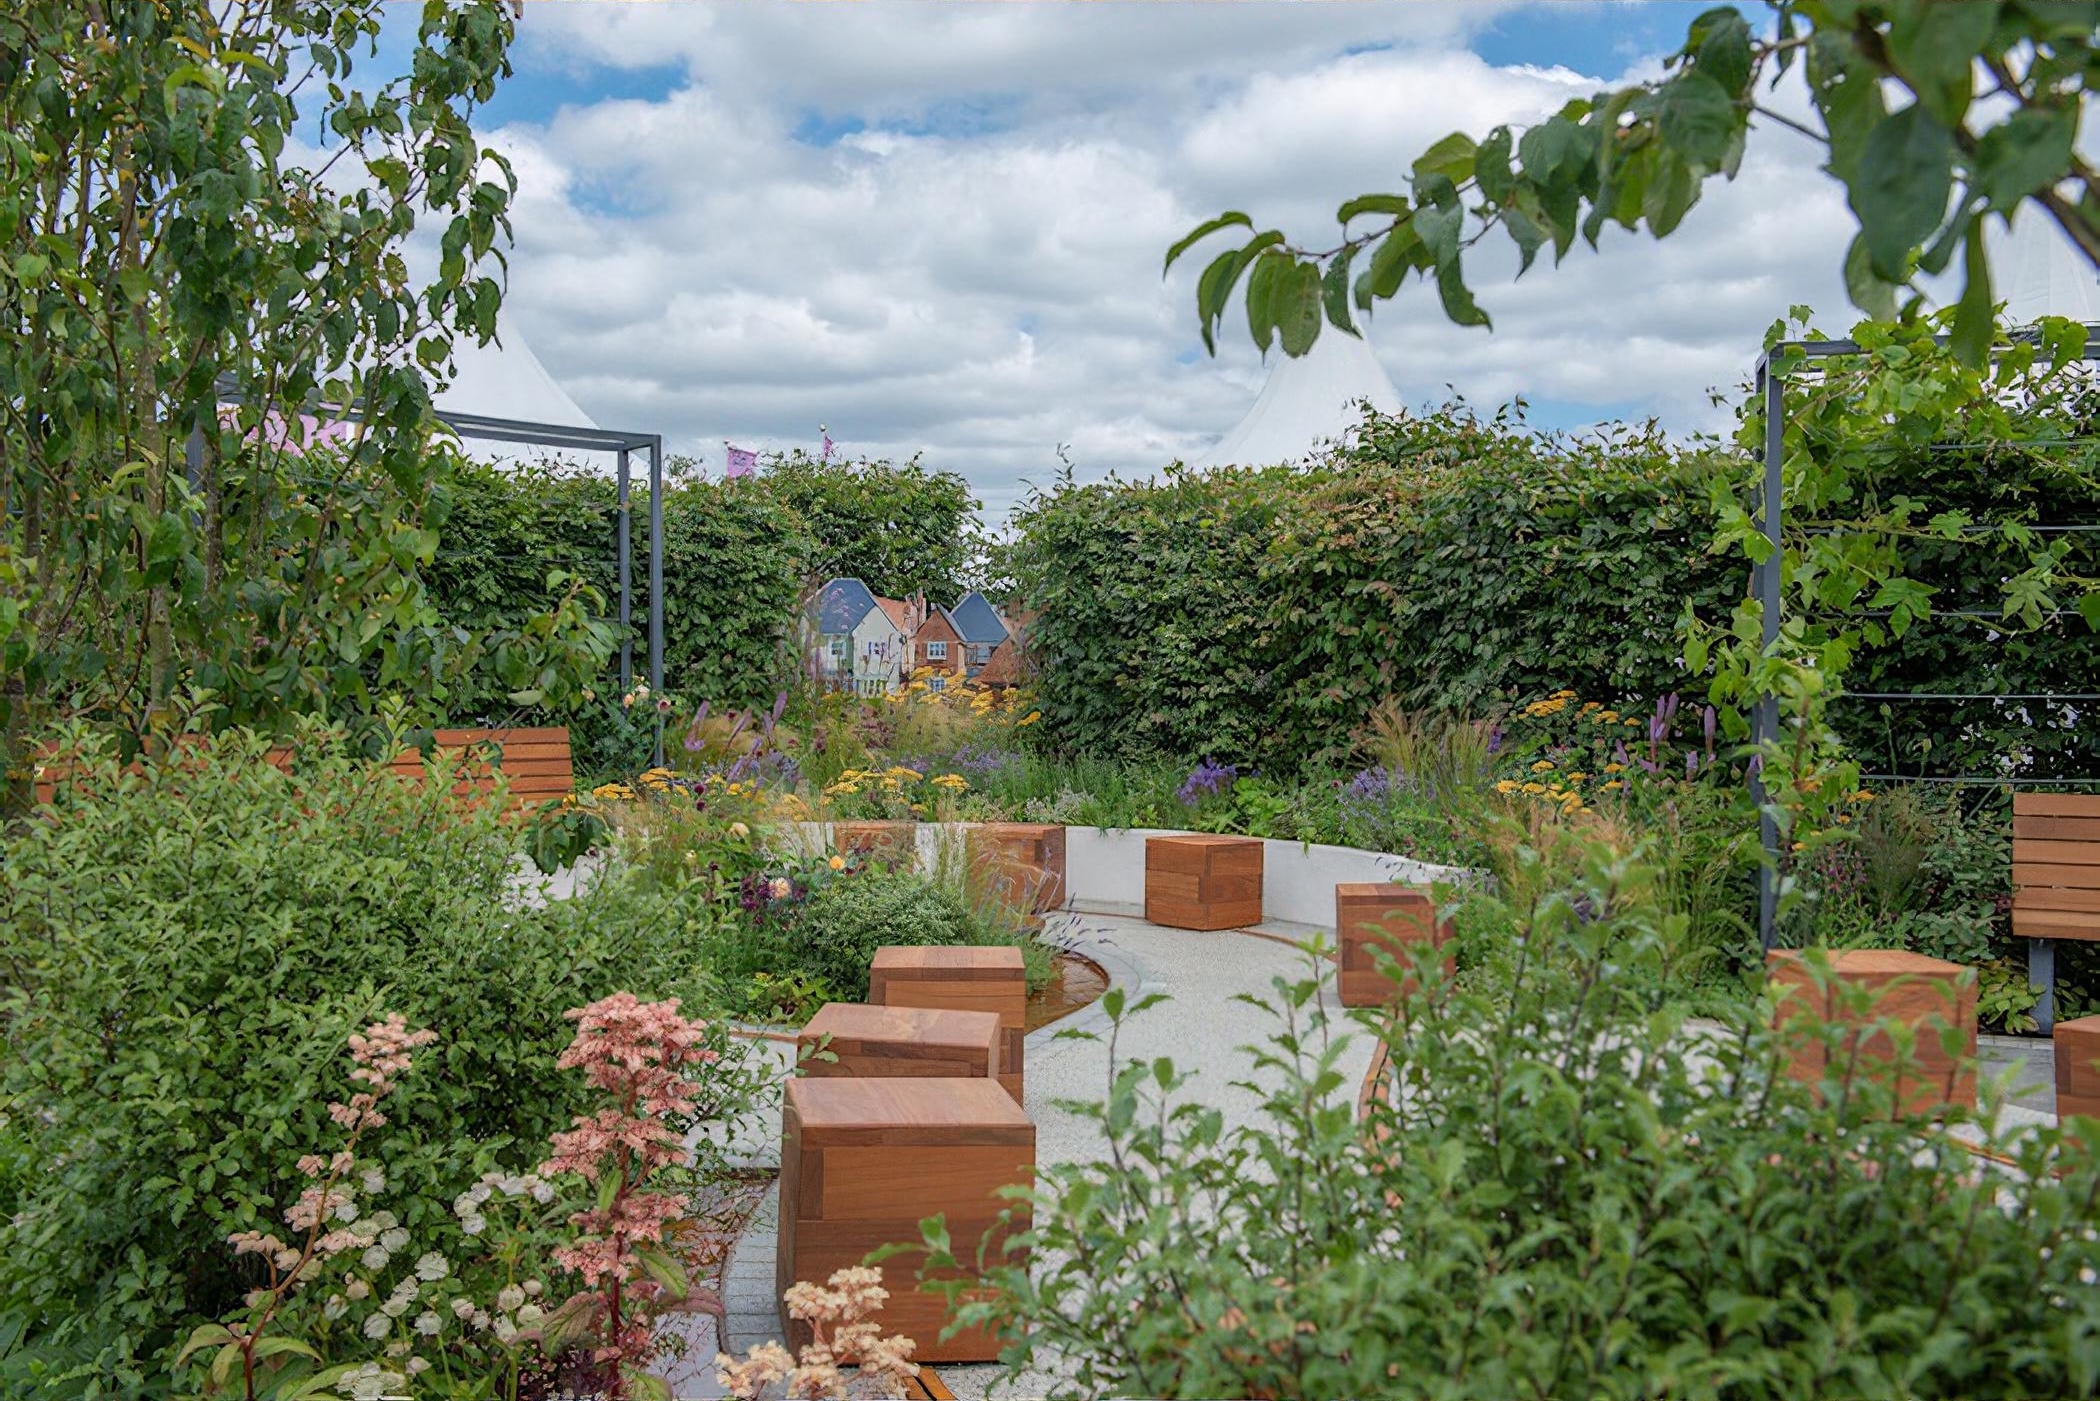 Crest Nicholson Livewell Garden RHS Hampton Court Flower Show 2019